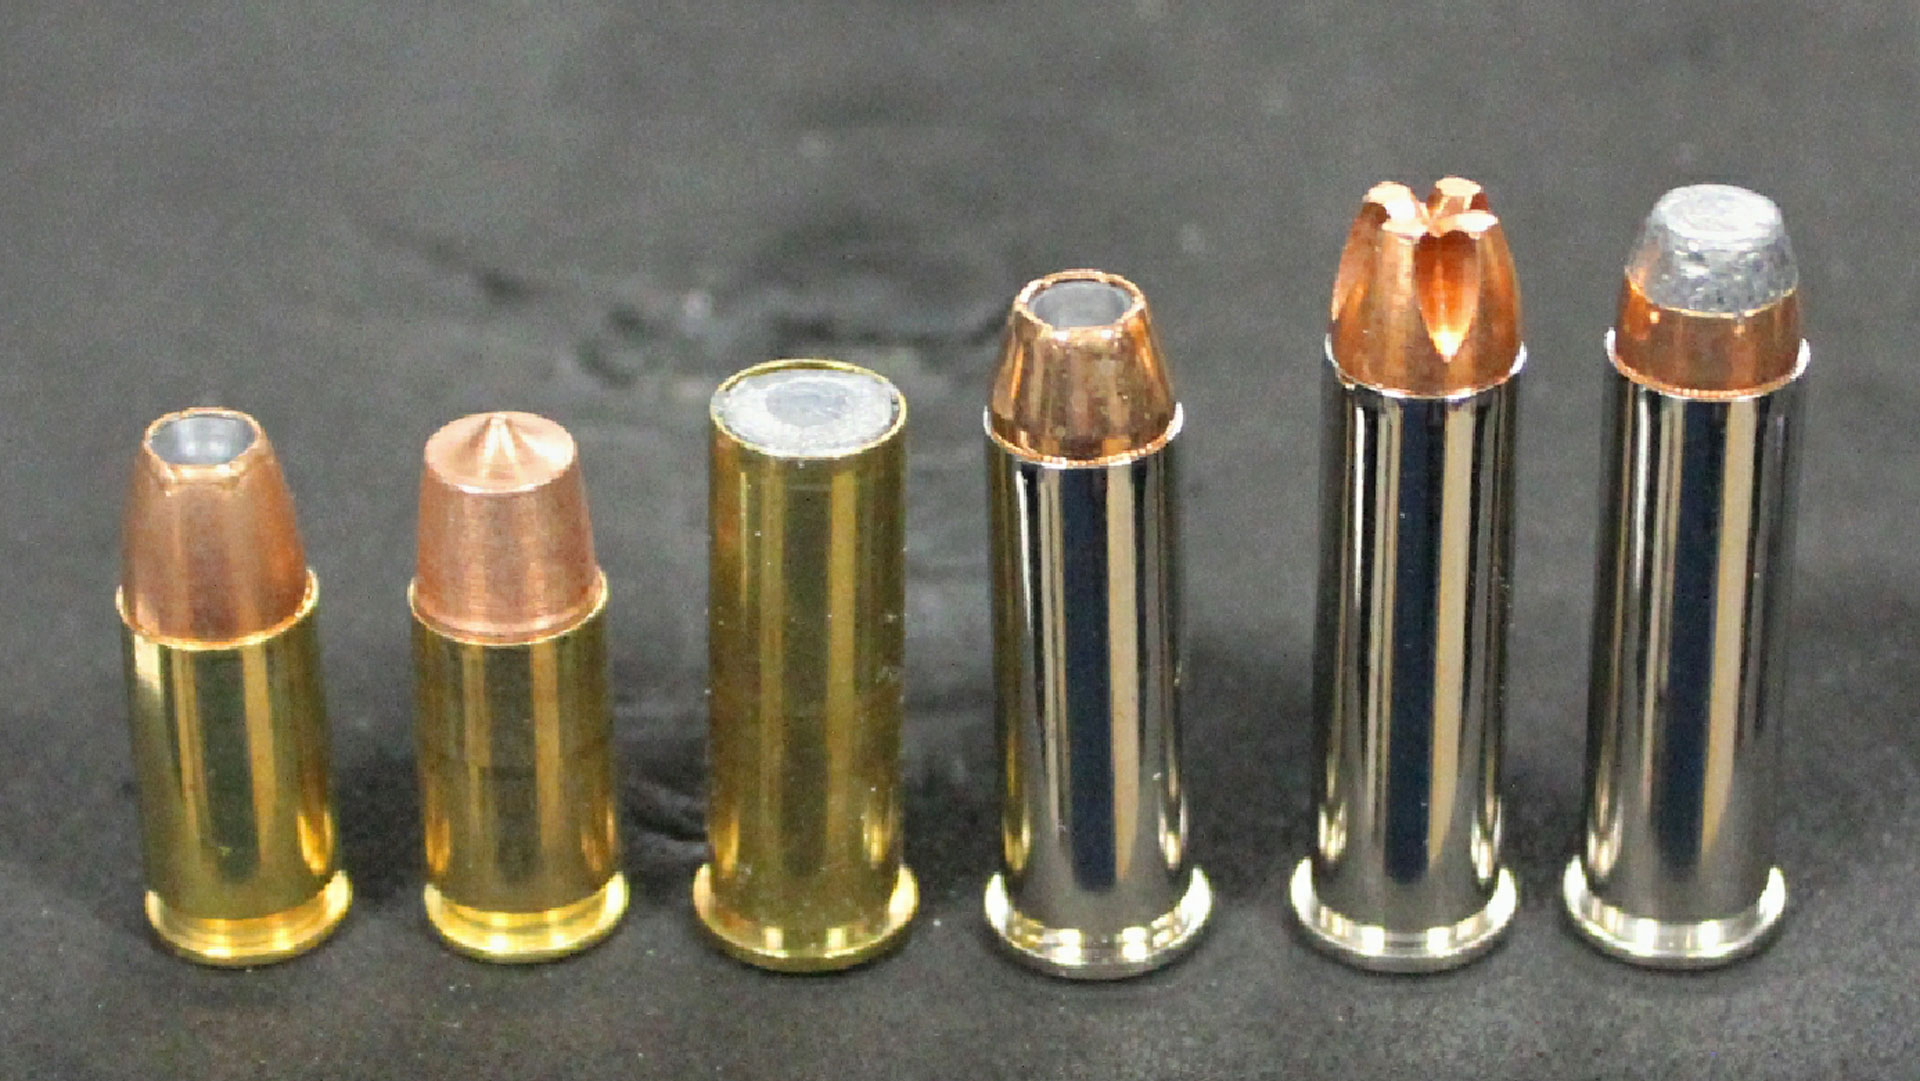 Taurus 692 types of ammo